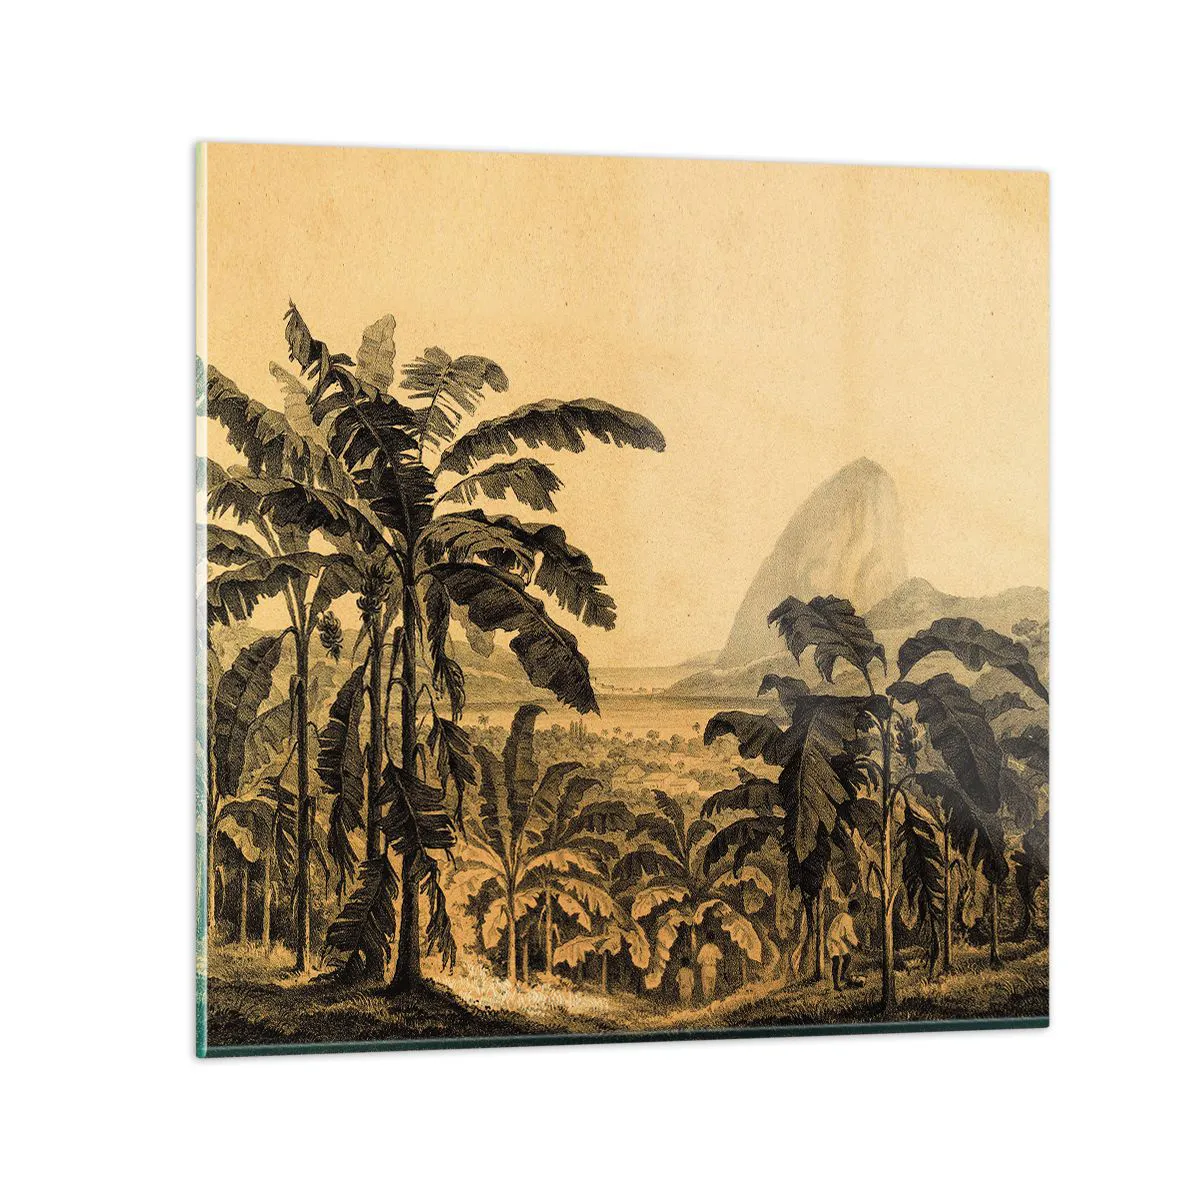 Obraz na szkle - w kolonialnym klimacie - 40x40 cm